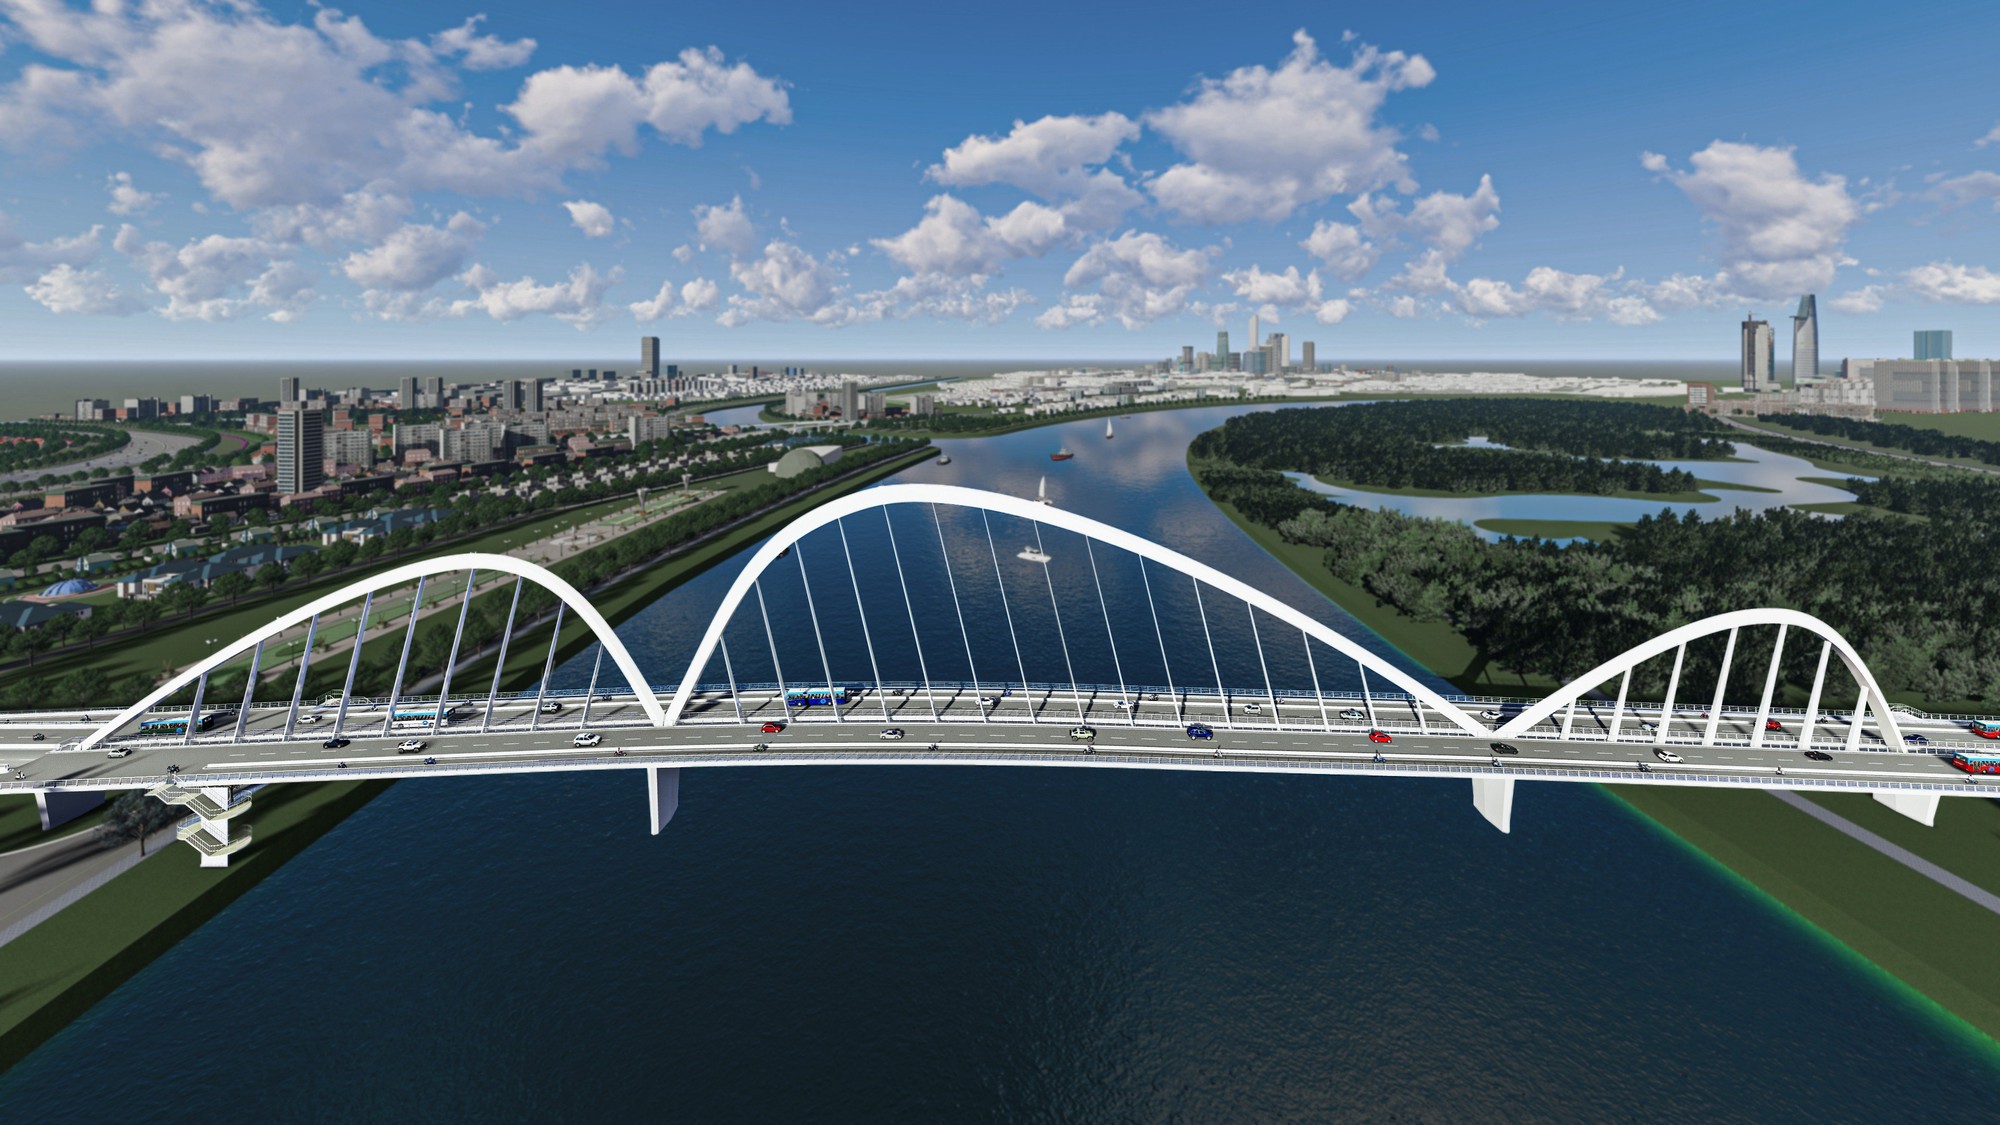 Cầu Thủ Thiêm 4 có thể ảnh hưởng tới thời gian hoàn vốn một số dự án trong khu vực - Ảnh 2.